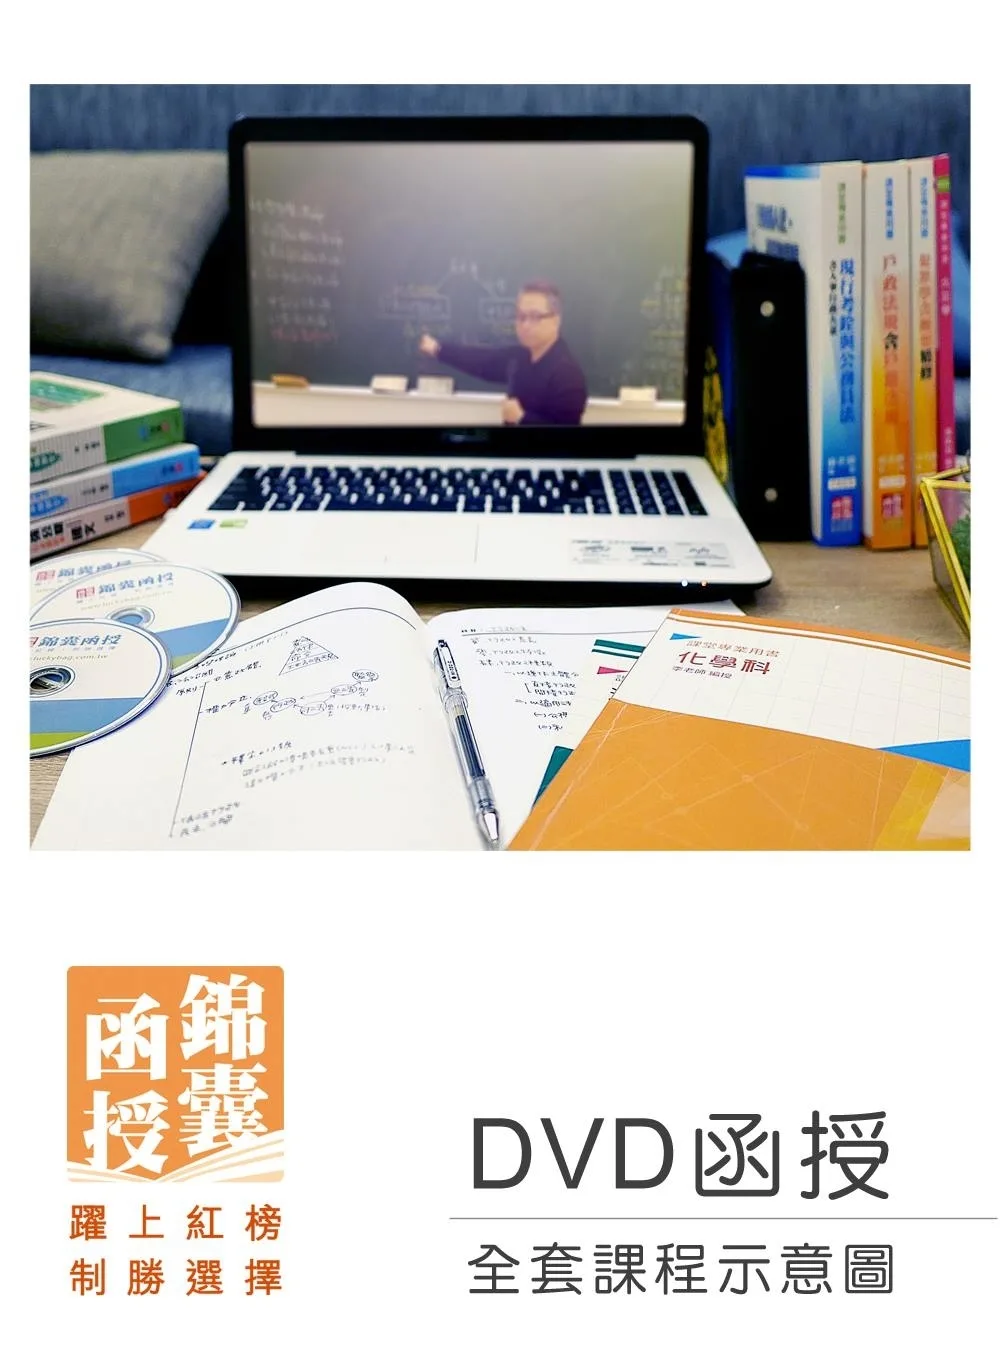 【DVD函授】111年記帳士證照考試-全套課程